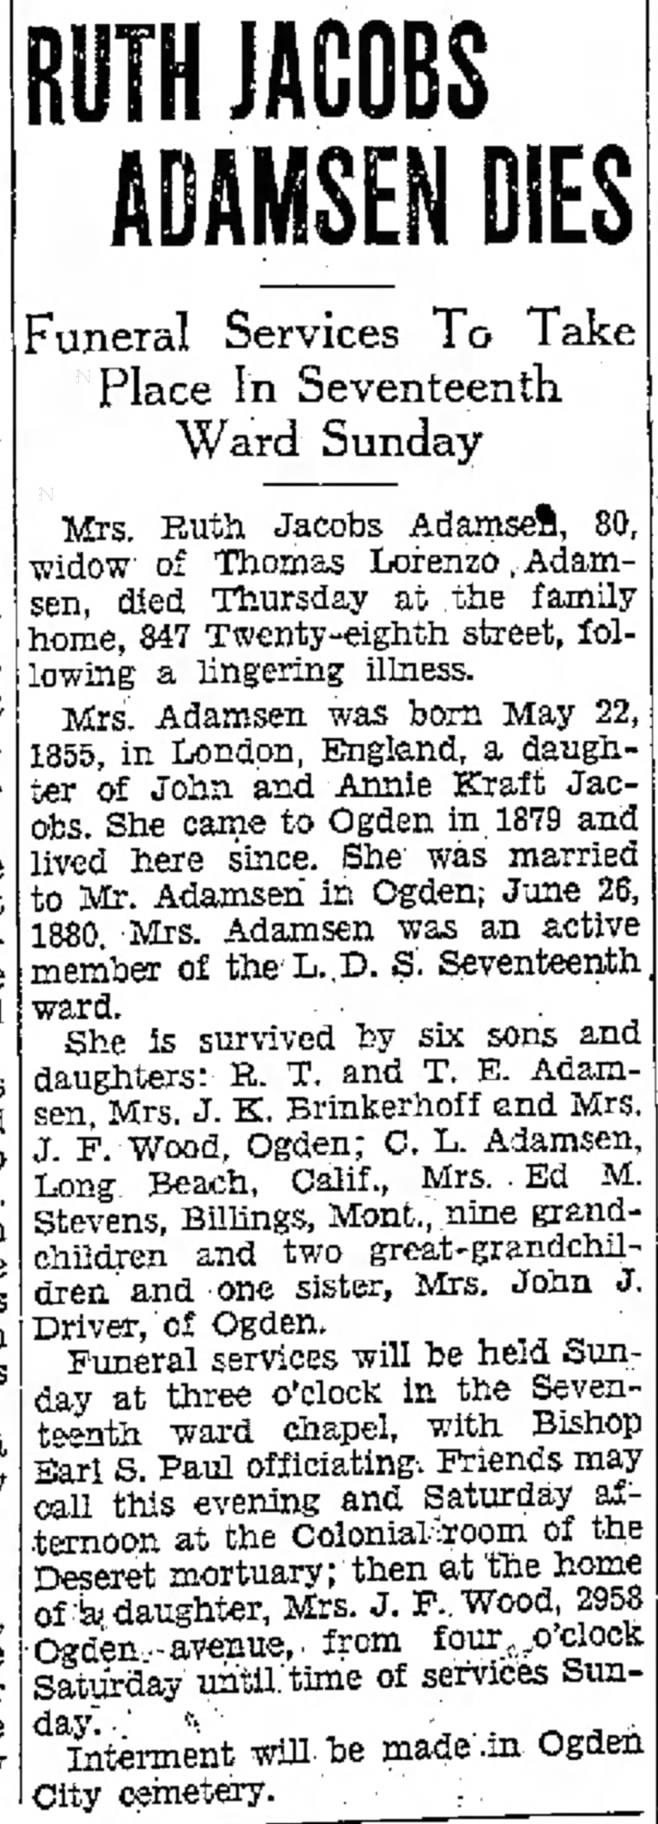 29 Nov 1935 Ruth Jacobs Adamsen Dies, Mrs. J.K. Brinkerhoff